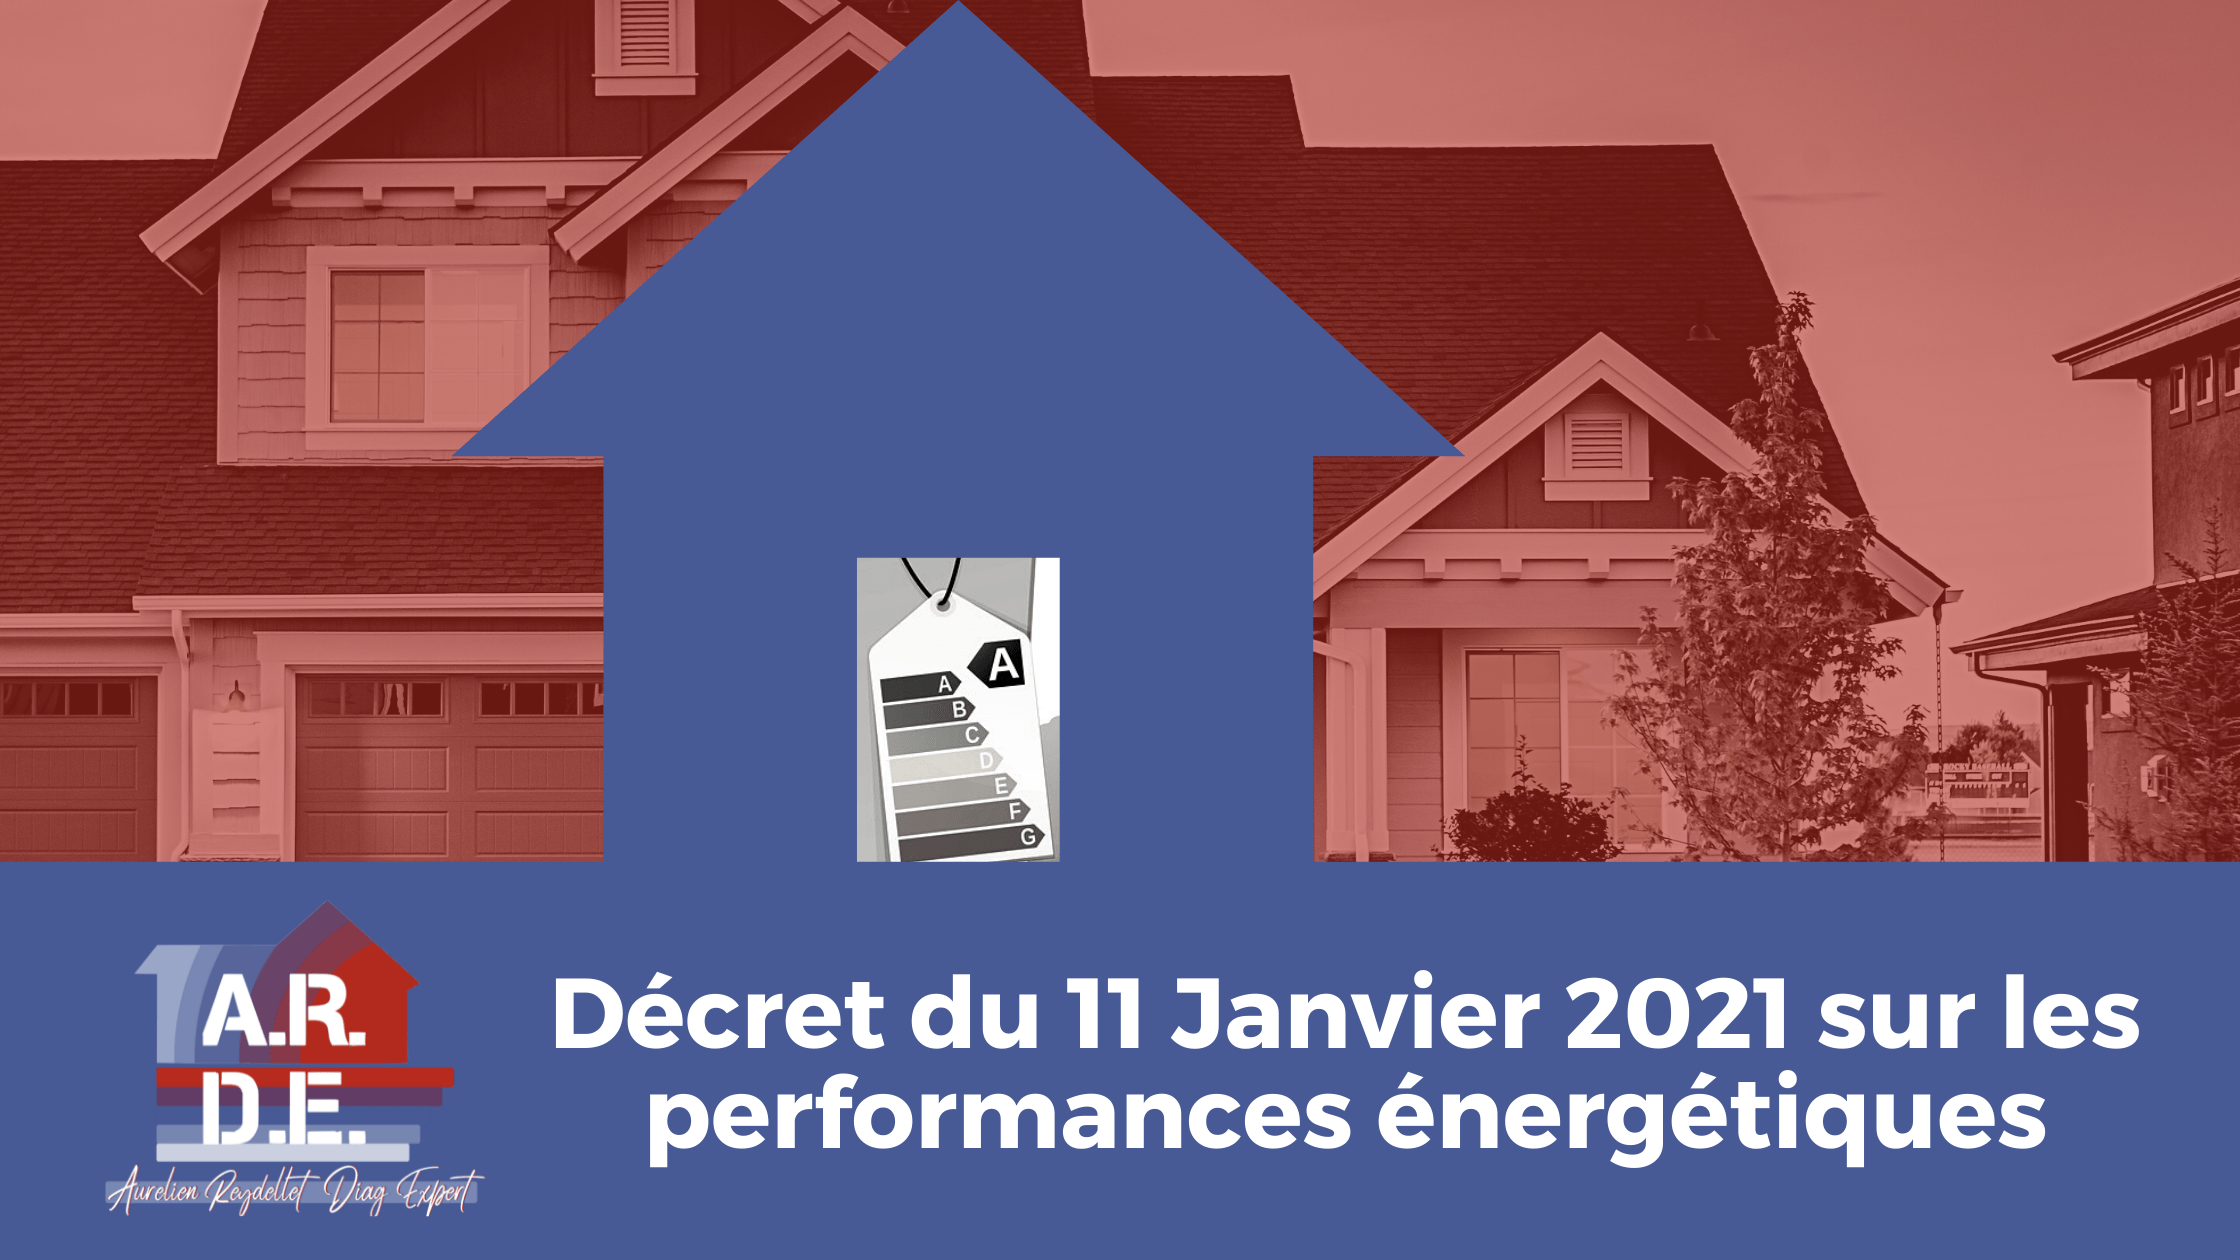 Lire la suite à propos de l’article Décret du 11 Janvier 2021 sur les performances énergétiques